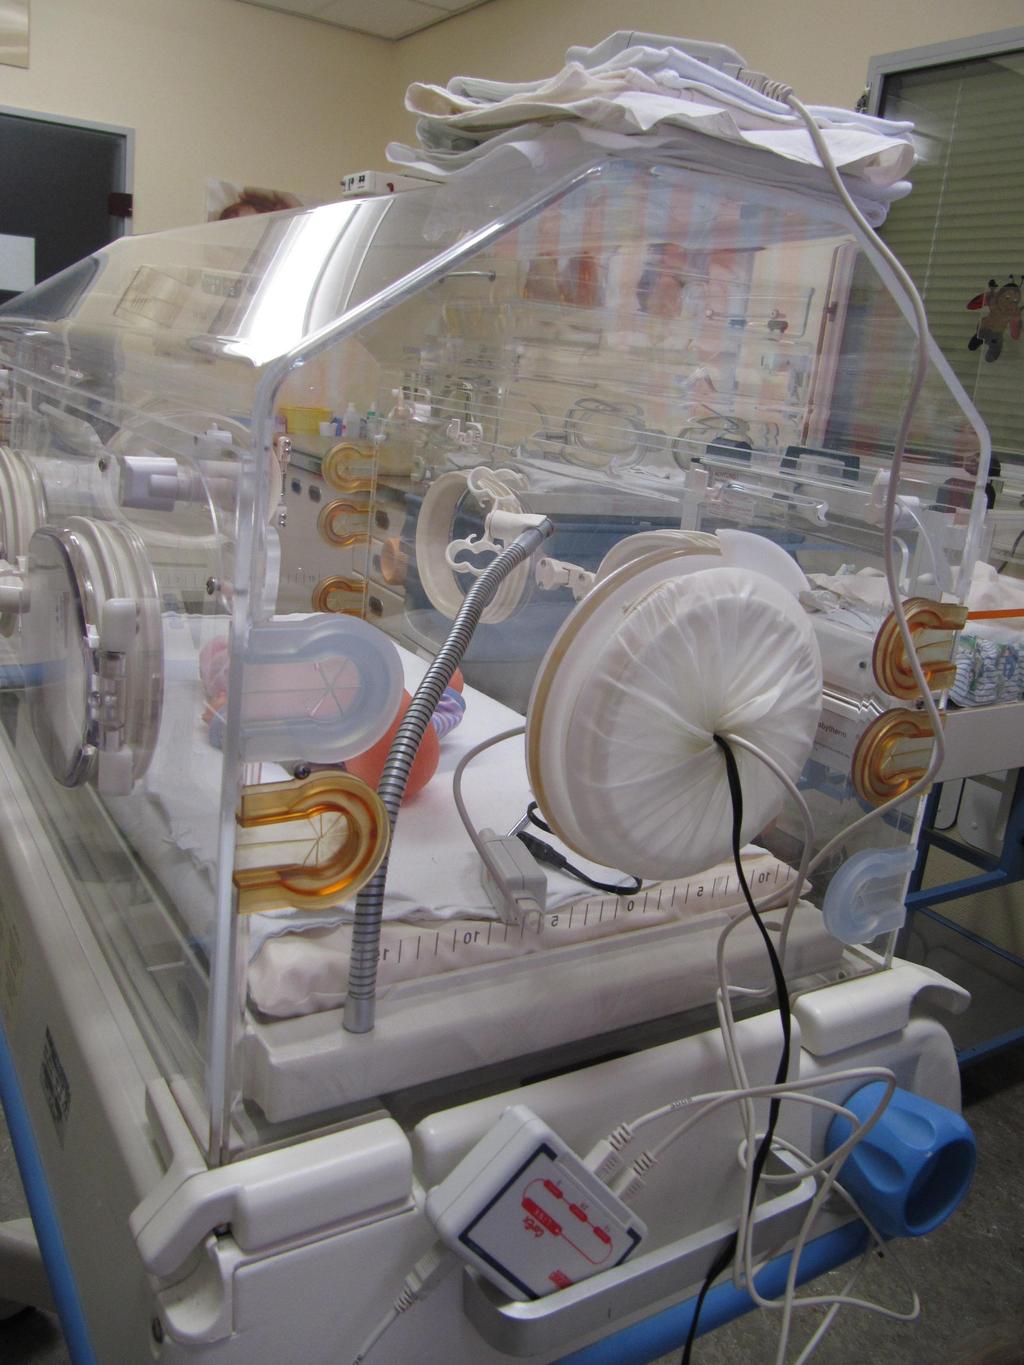 Darstellung der Geräusche im Inkubator Fragestellung als Startpunkt für das Projekt war: Wie hört sich die Umgebung für einen Säugling im Inkubator an?